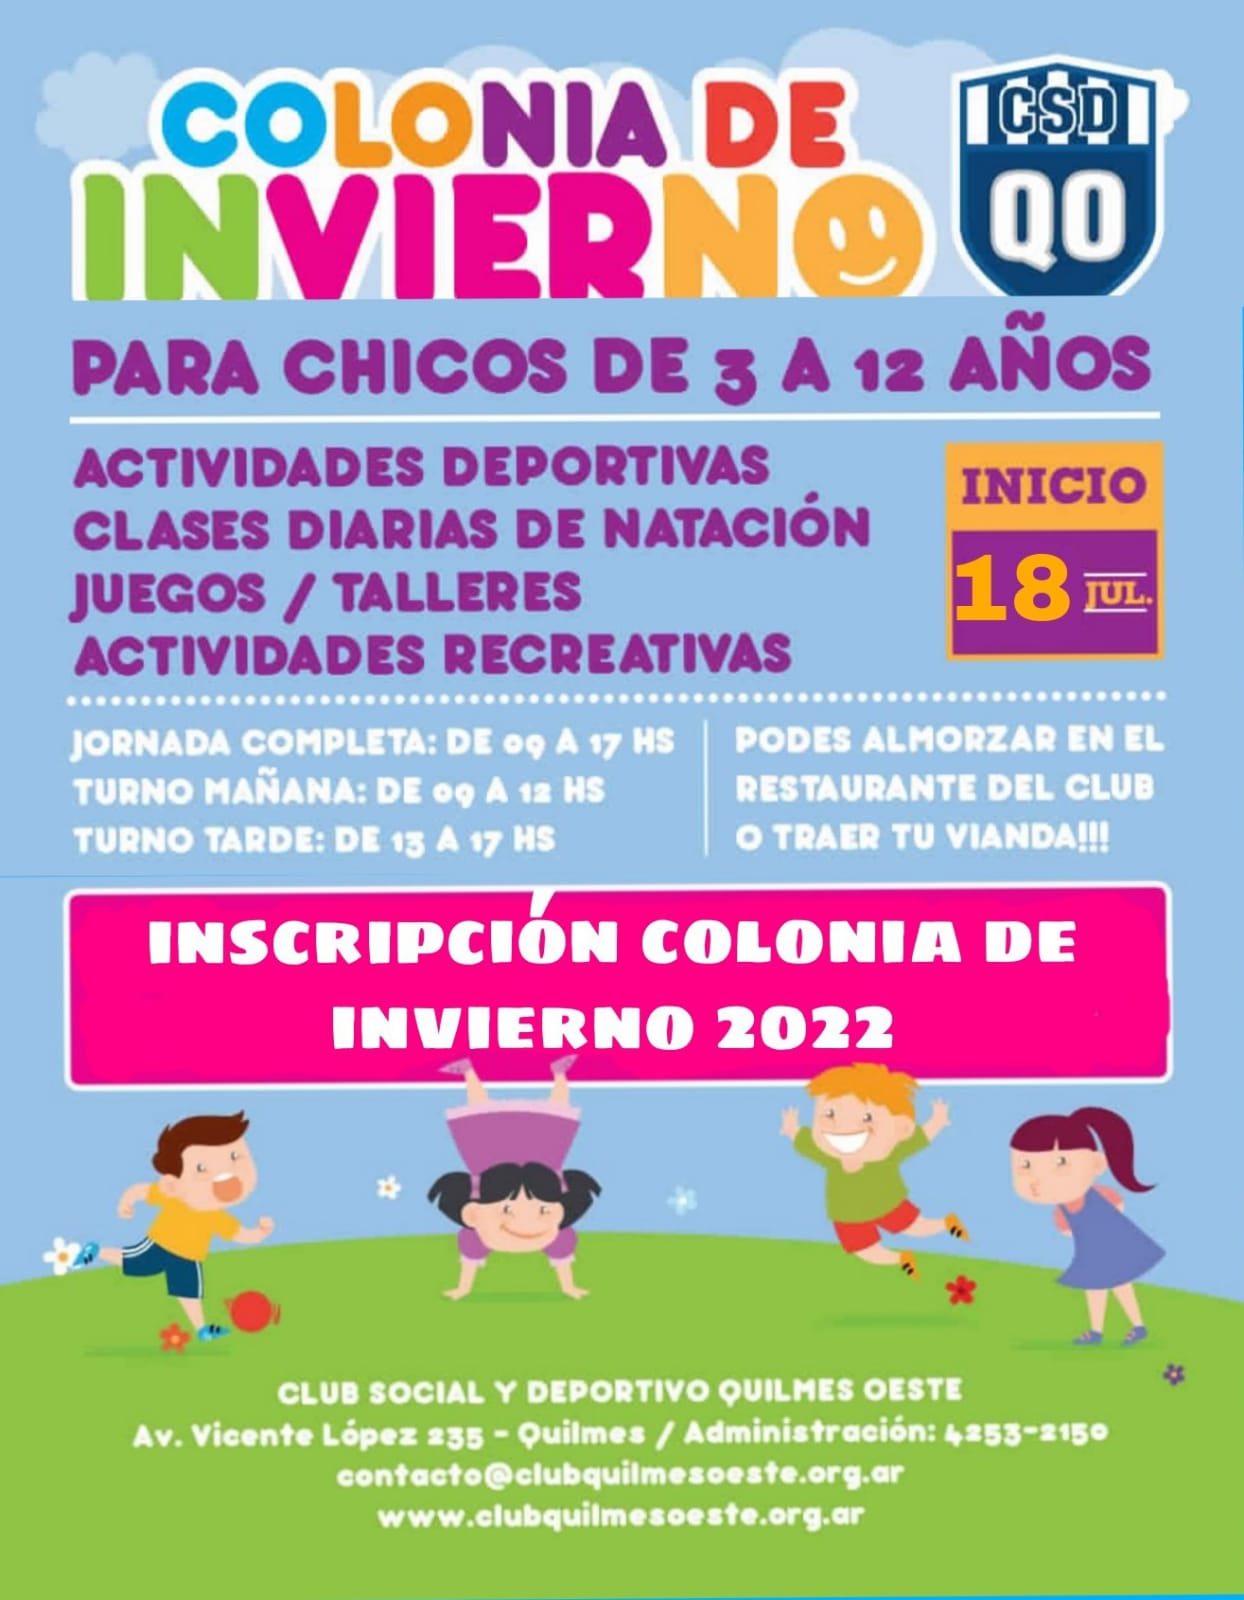 Para chicos de 3 a 12 años, se viene la Colonia de Invierno en el Club Quilmes Oeste.